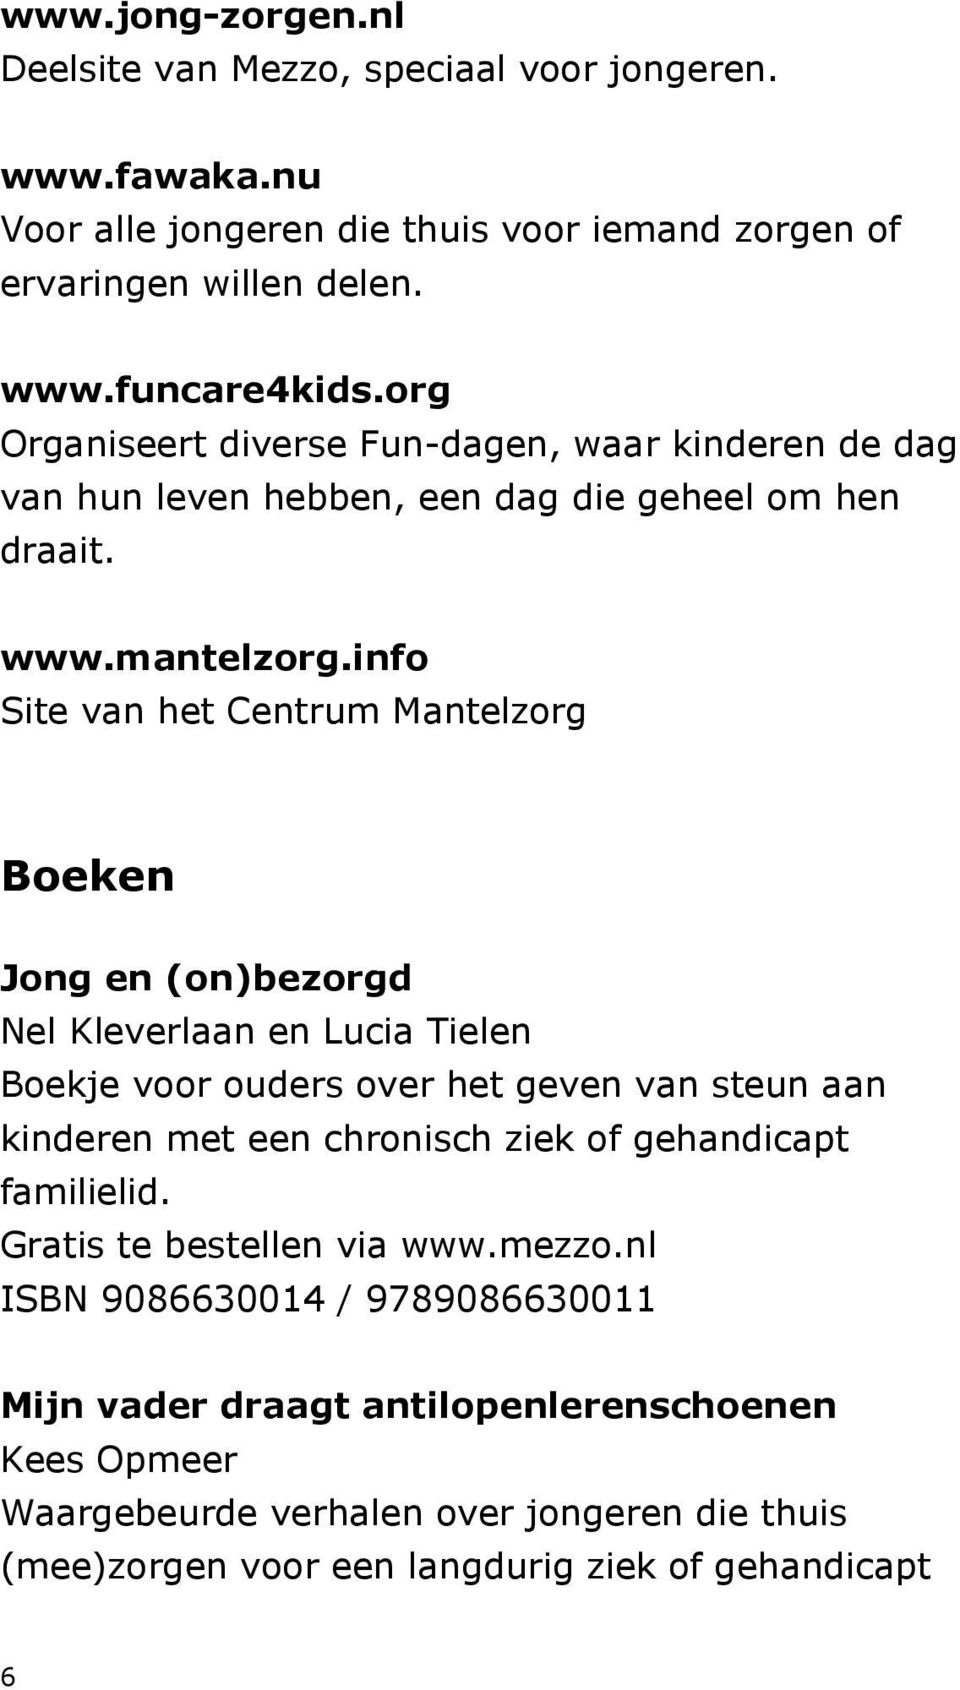 info Site van het Centrum Mantelzorg Boeken Jong en (on)bezorgd Nel Kleverlaan en Lucia Tielen Boekje voor ouders over het geven van steun aan kinderen met een chronisch ziek of